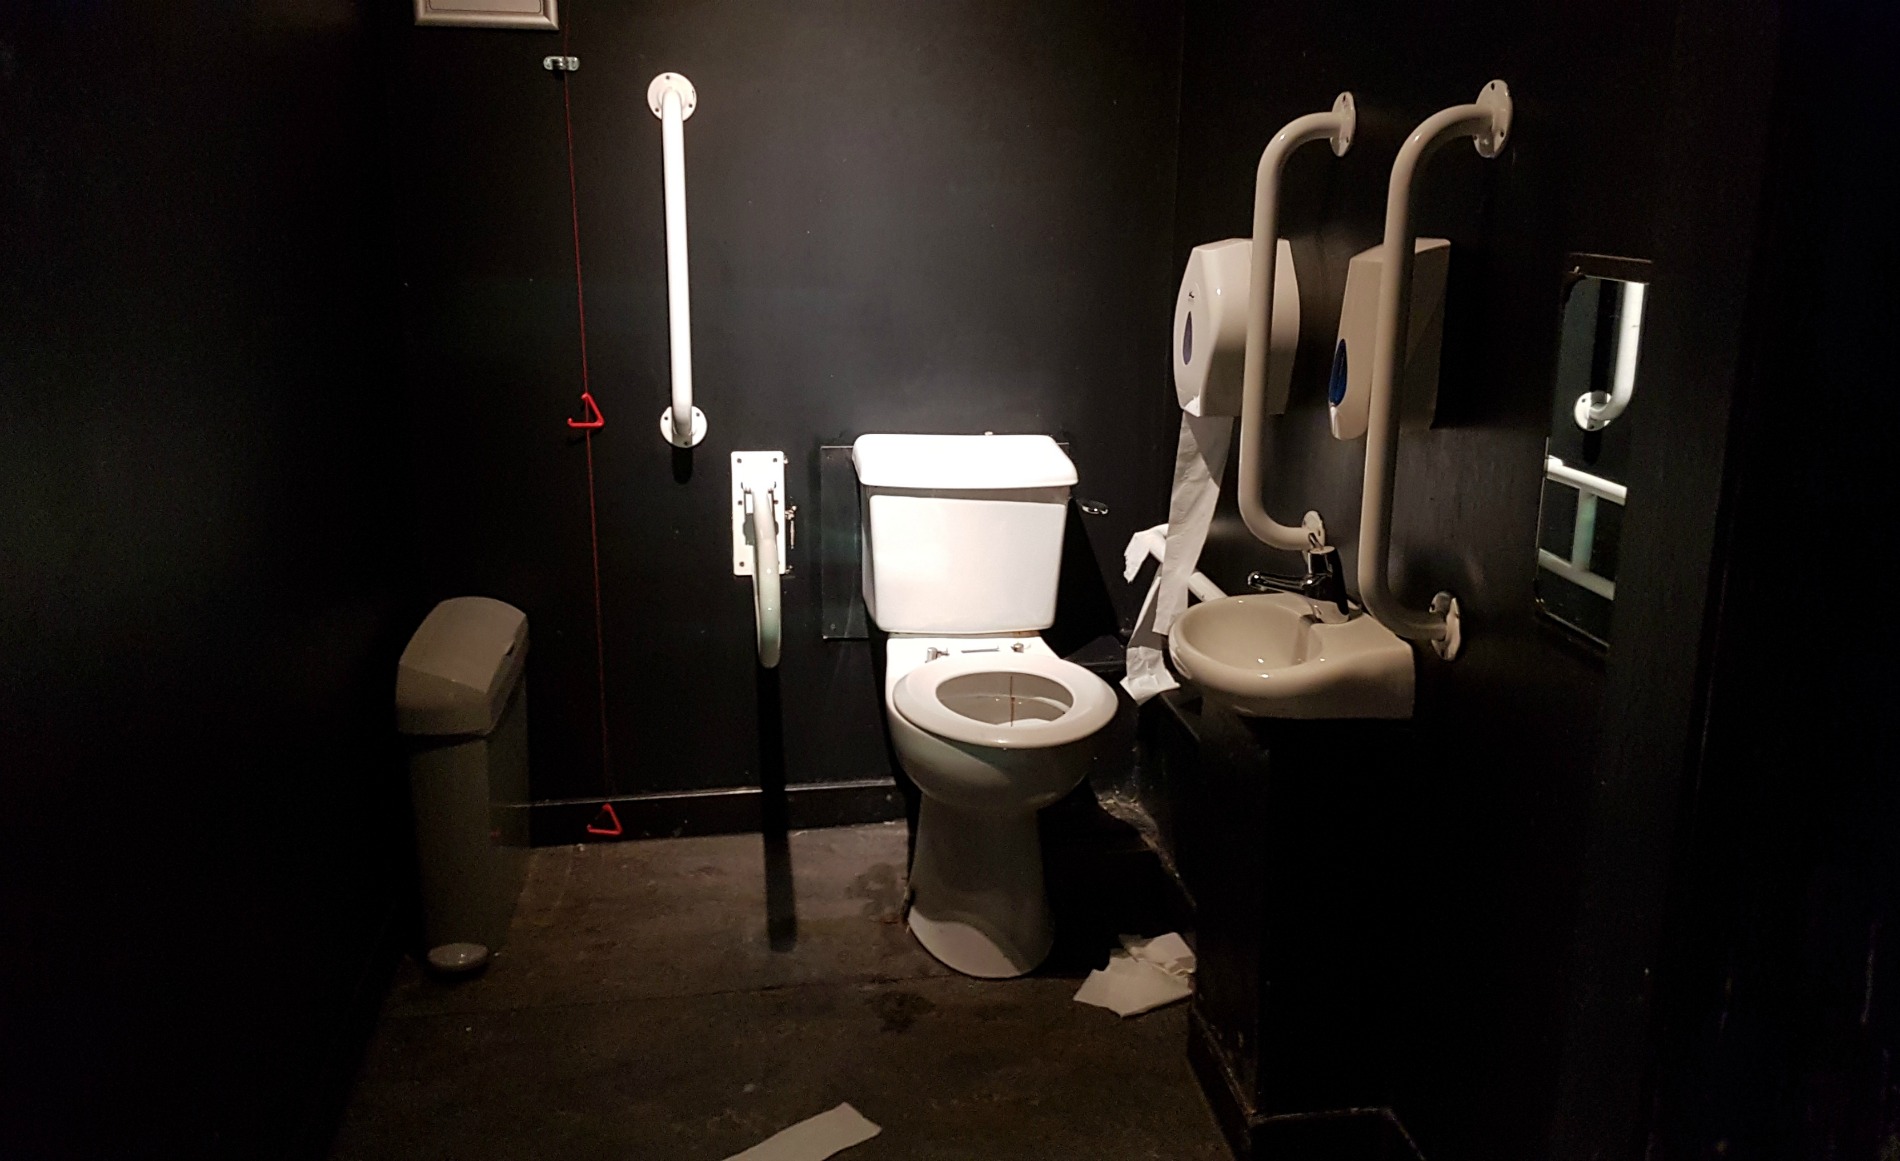 O2 ABC Glasgow accessible toilet